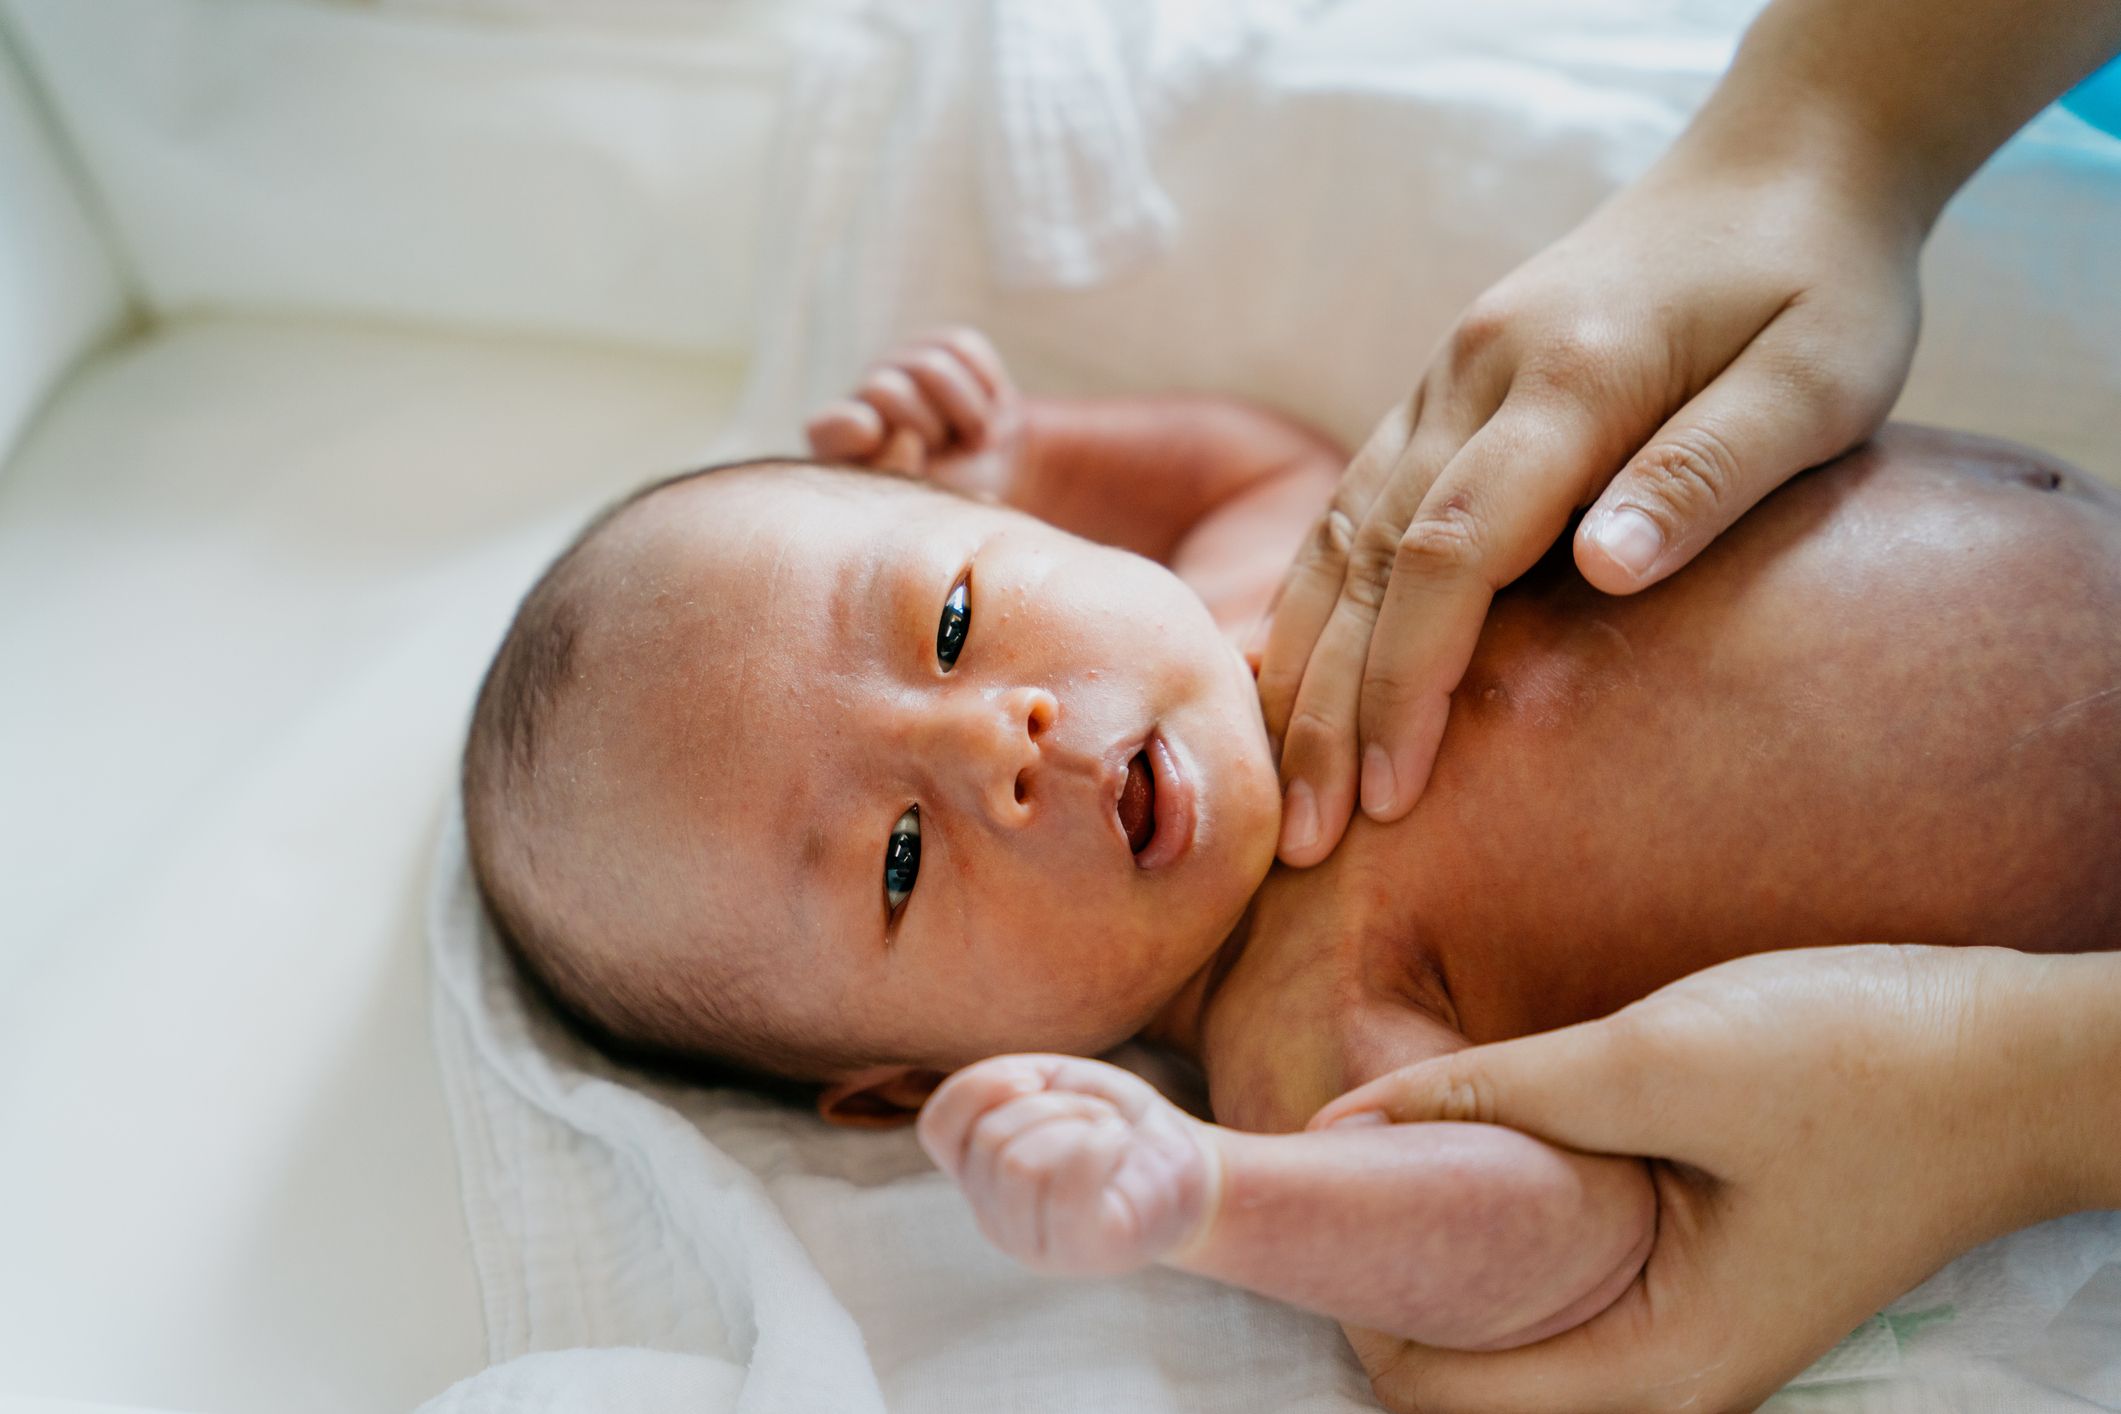 Farmacia Pedro Moreno Arroyo - La piel de los bebés 👶 y más aun la de los recién  nacidos es cinco veces más fina, y por tanto mil veces más delicada, que